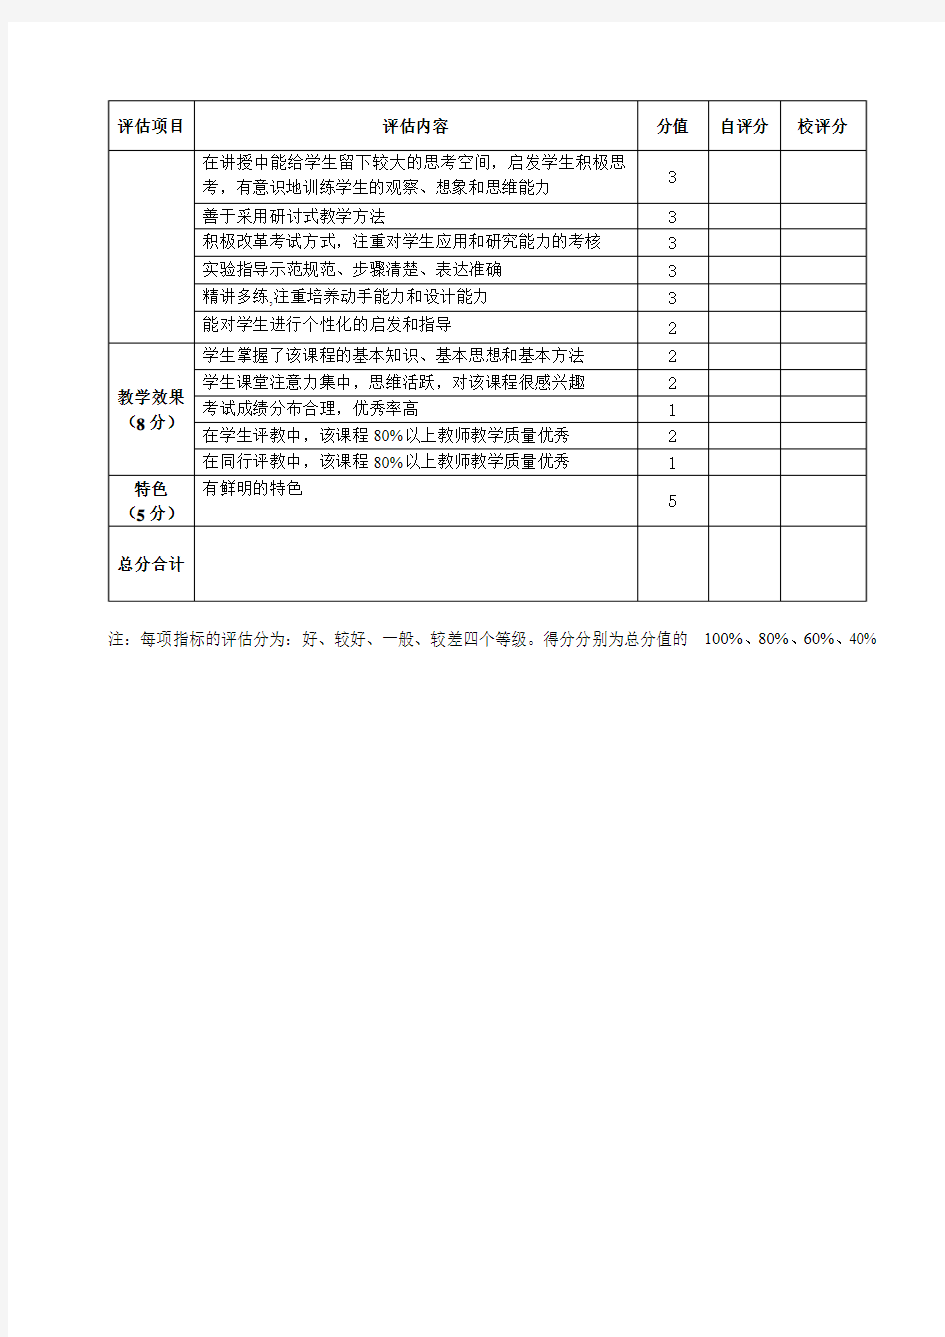 中国石油大学(北京)重点课程建设质量评估指标体系(理论